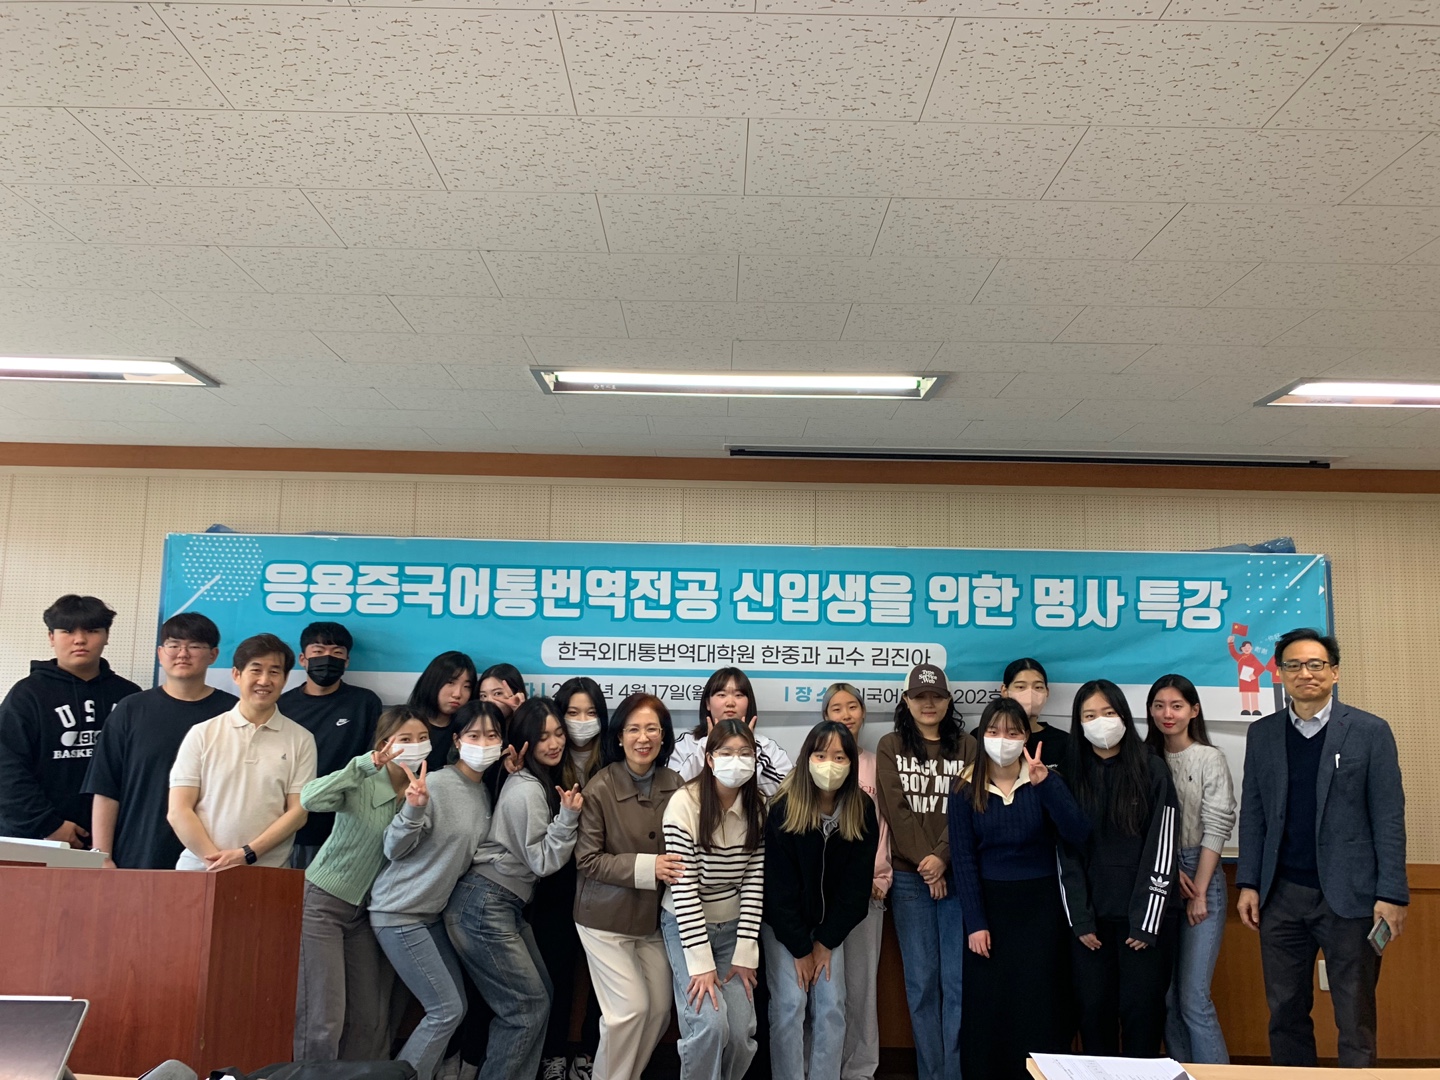 한국외대 통번역대학원 한중과 김진아 교수 특강 개최